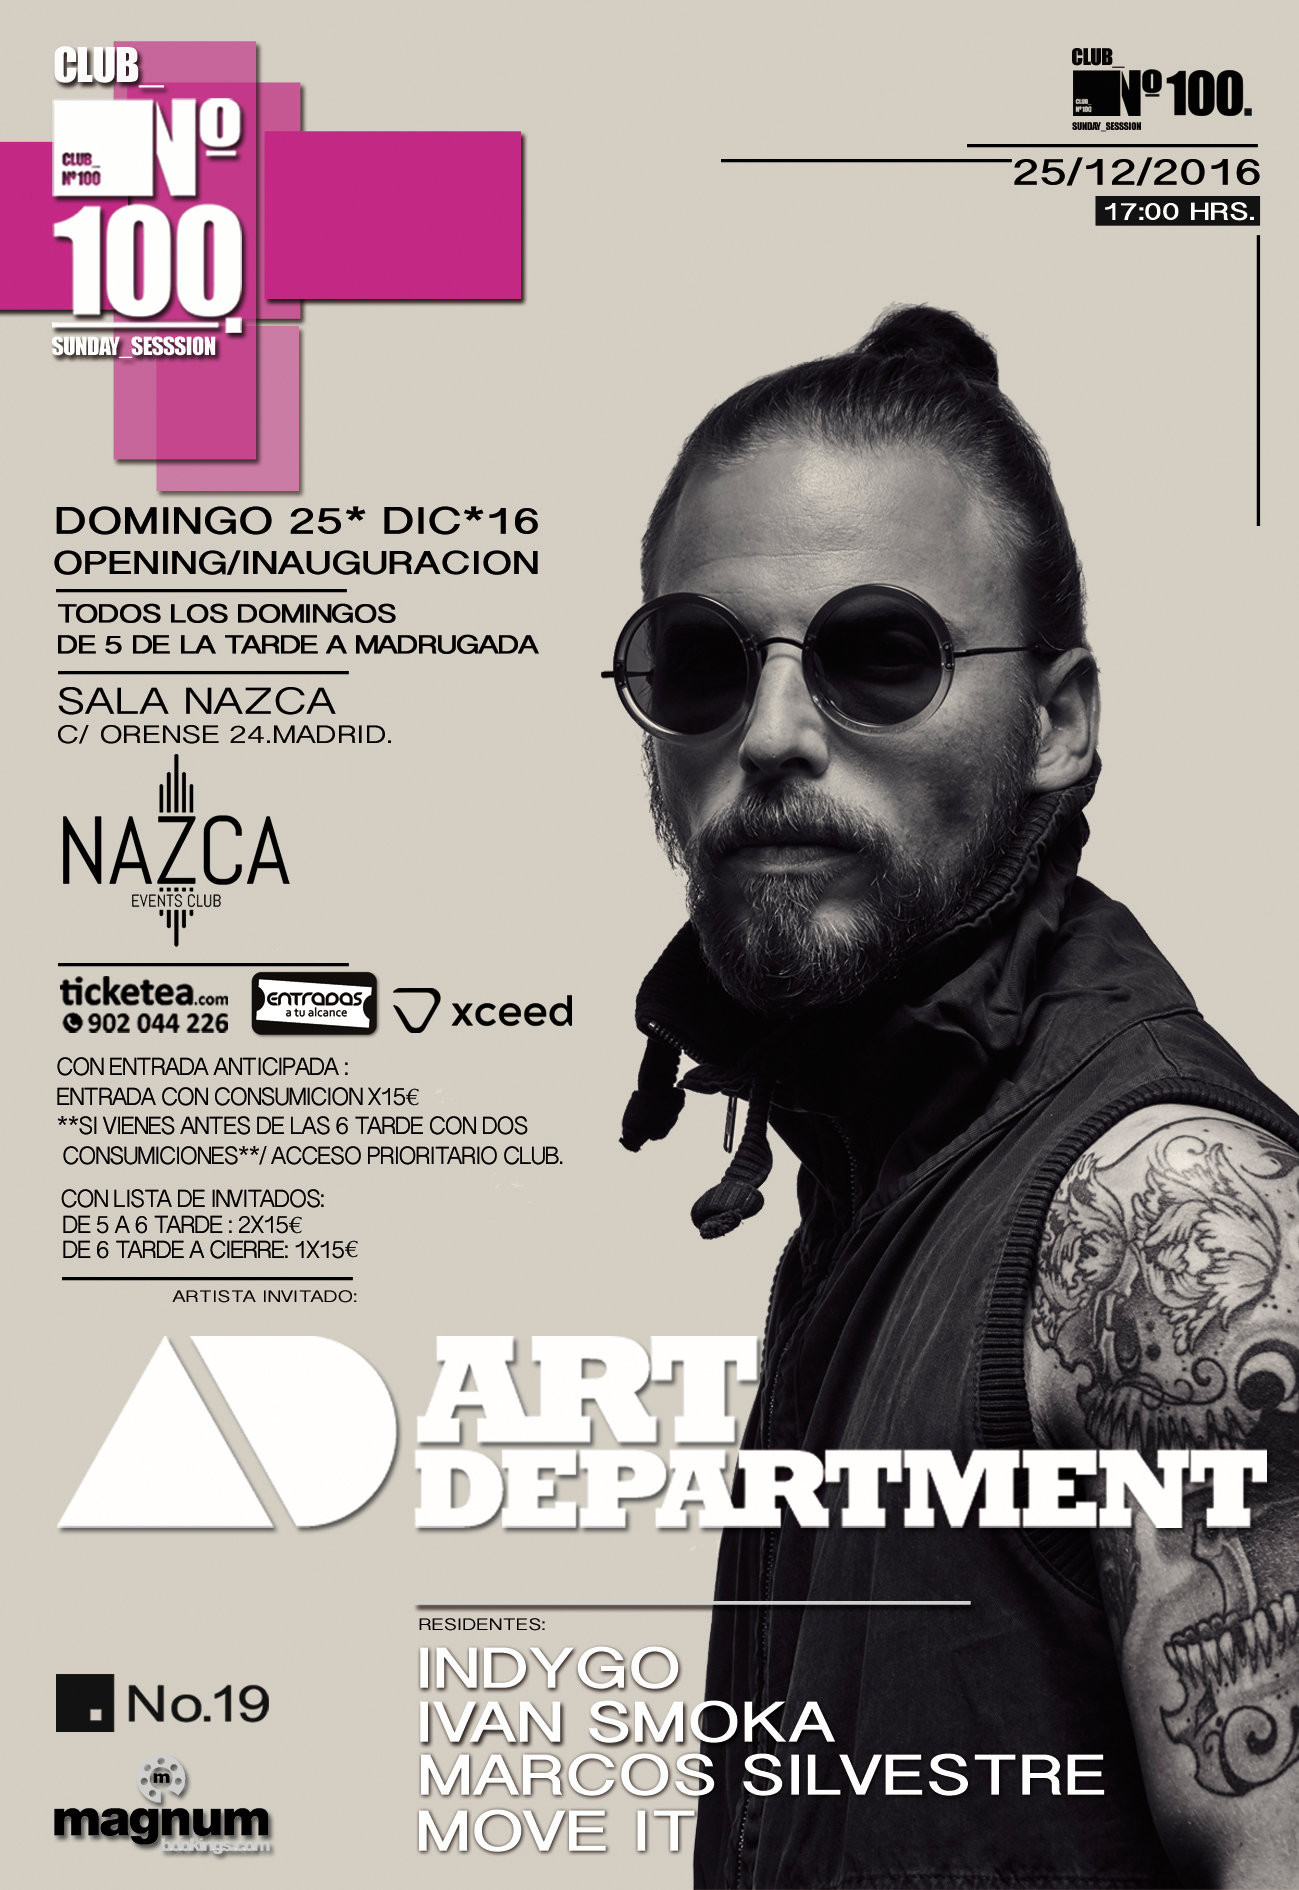 CLUB Nº100 arranca en NAZCA con Art Department como invitado